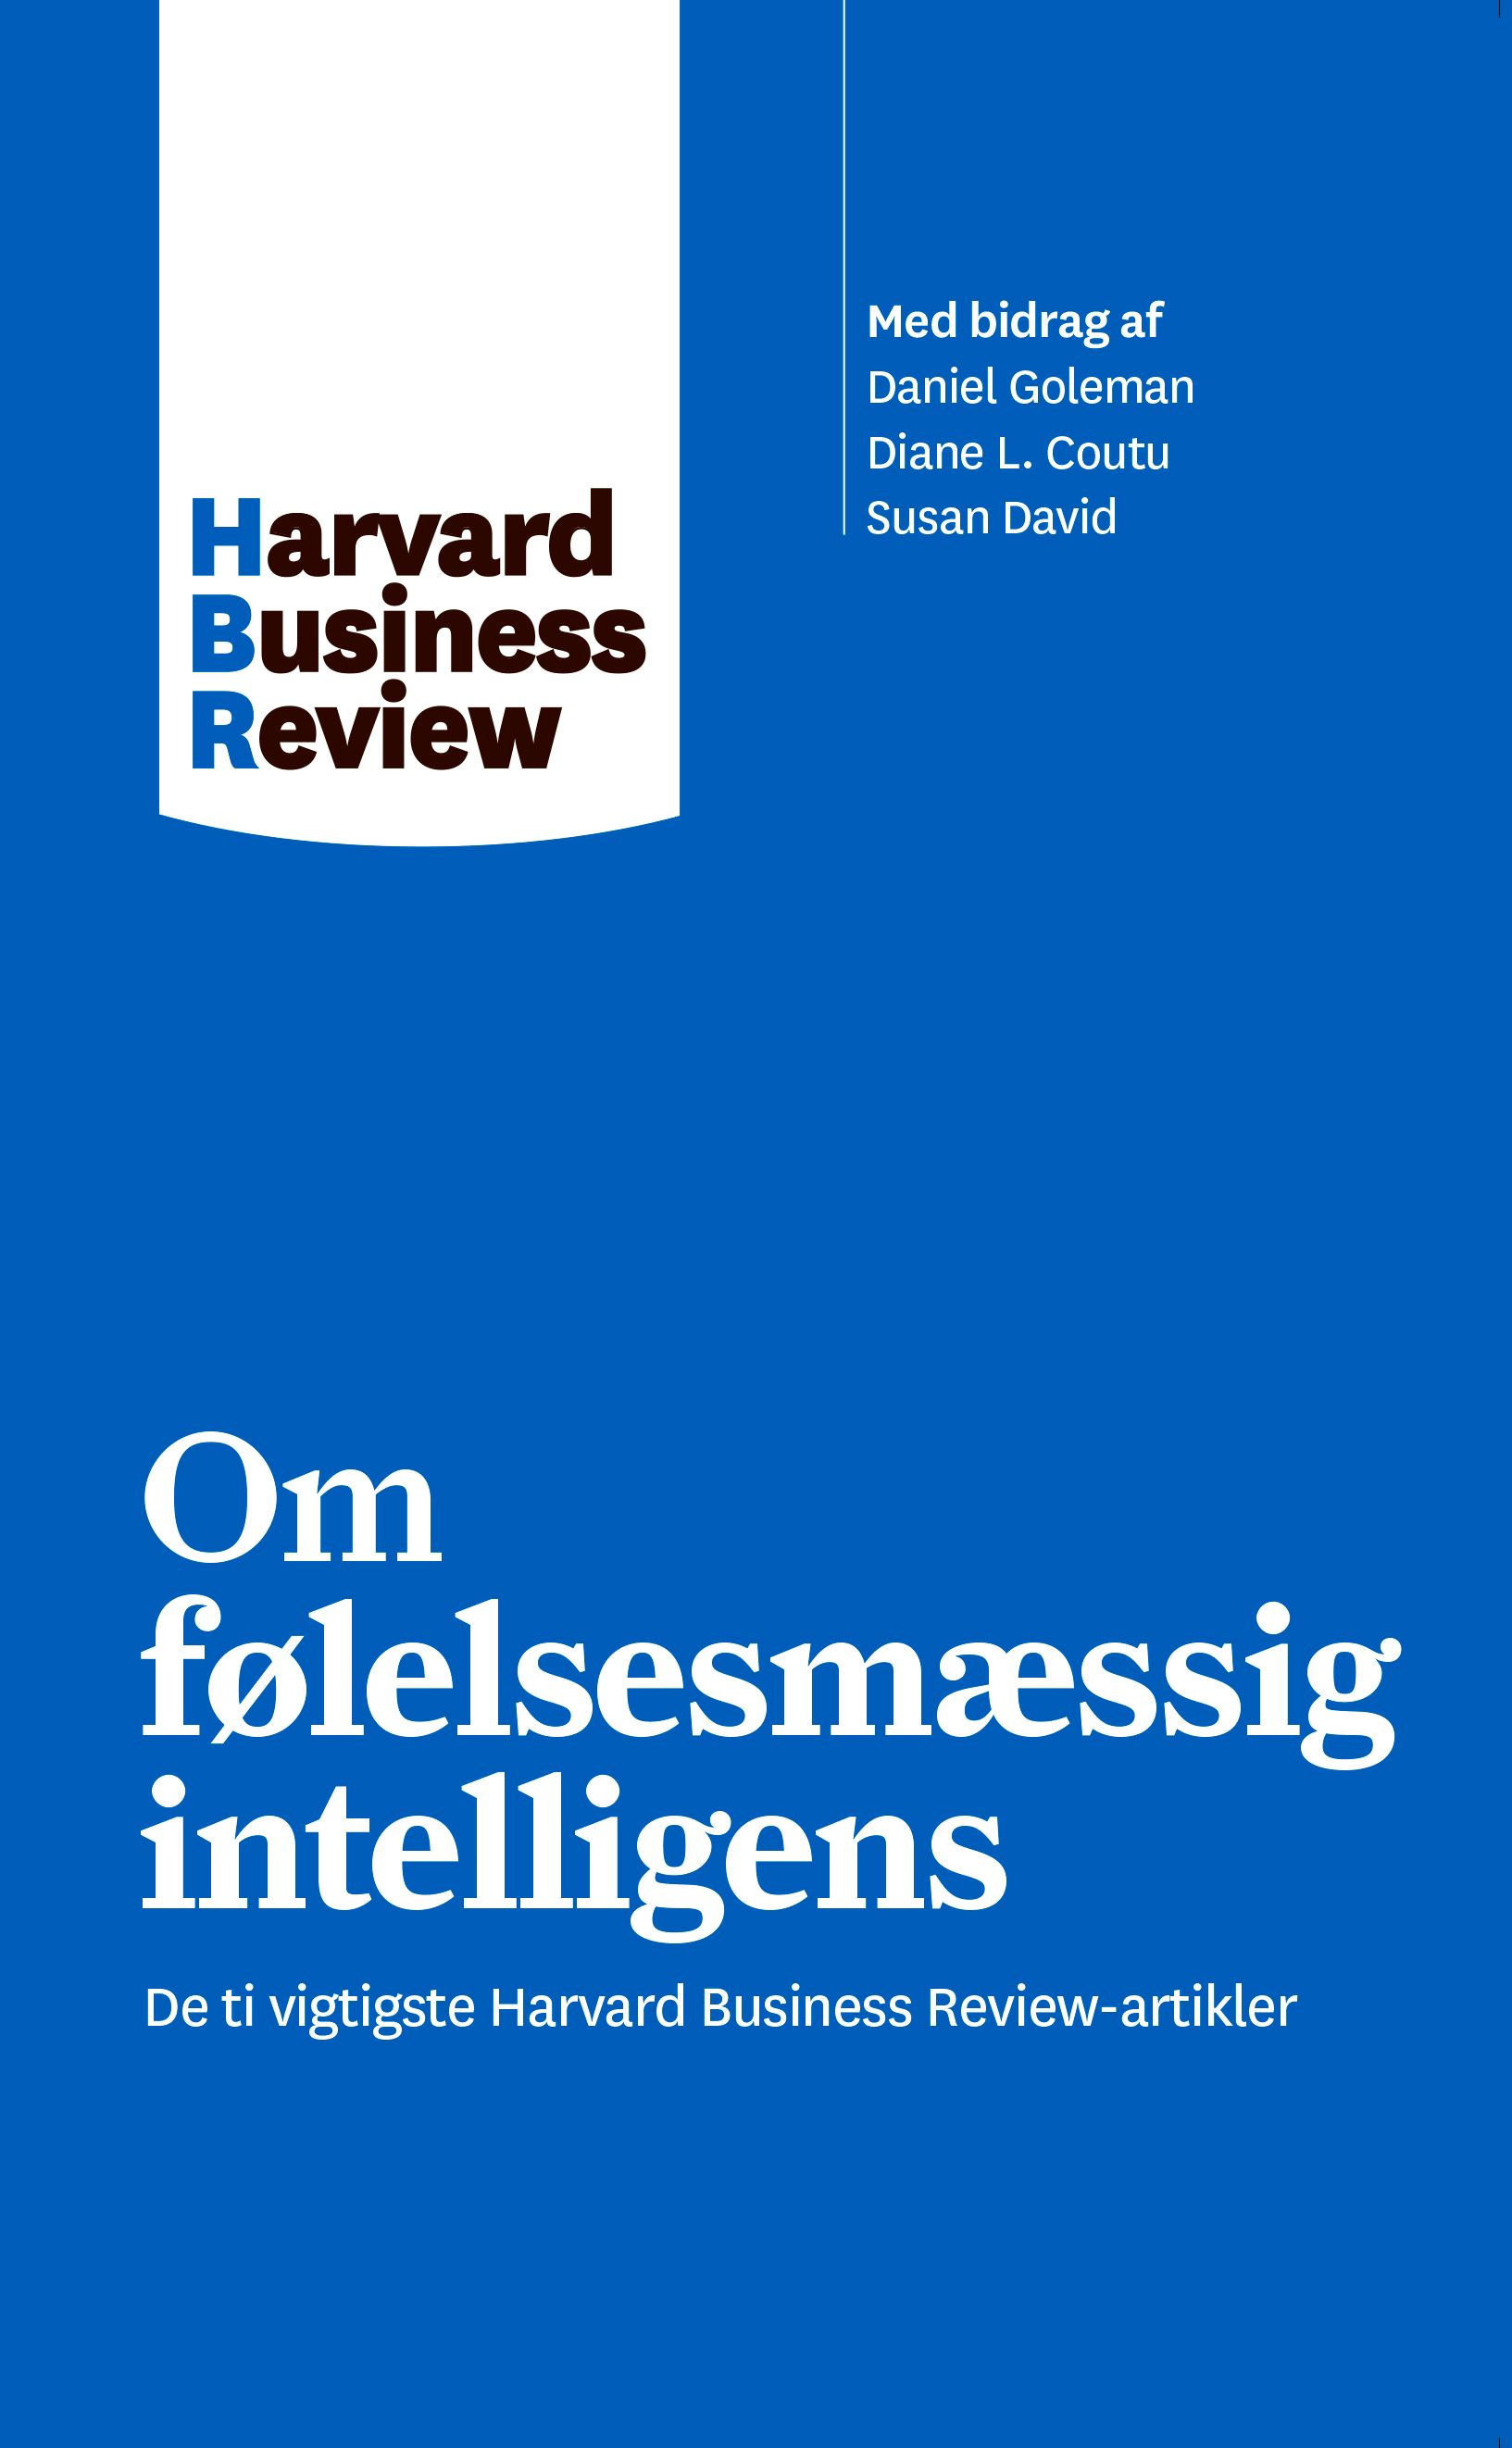 Om følelsesmæssig intelligens, eBook by Harvard Business Review